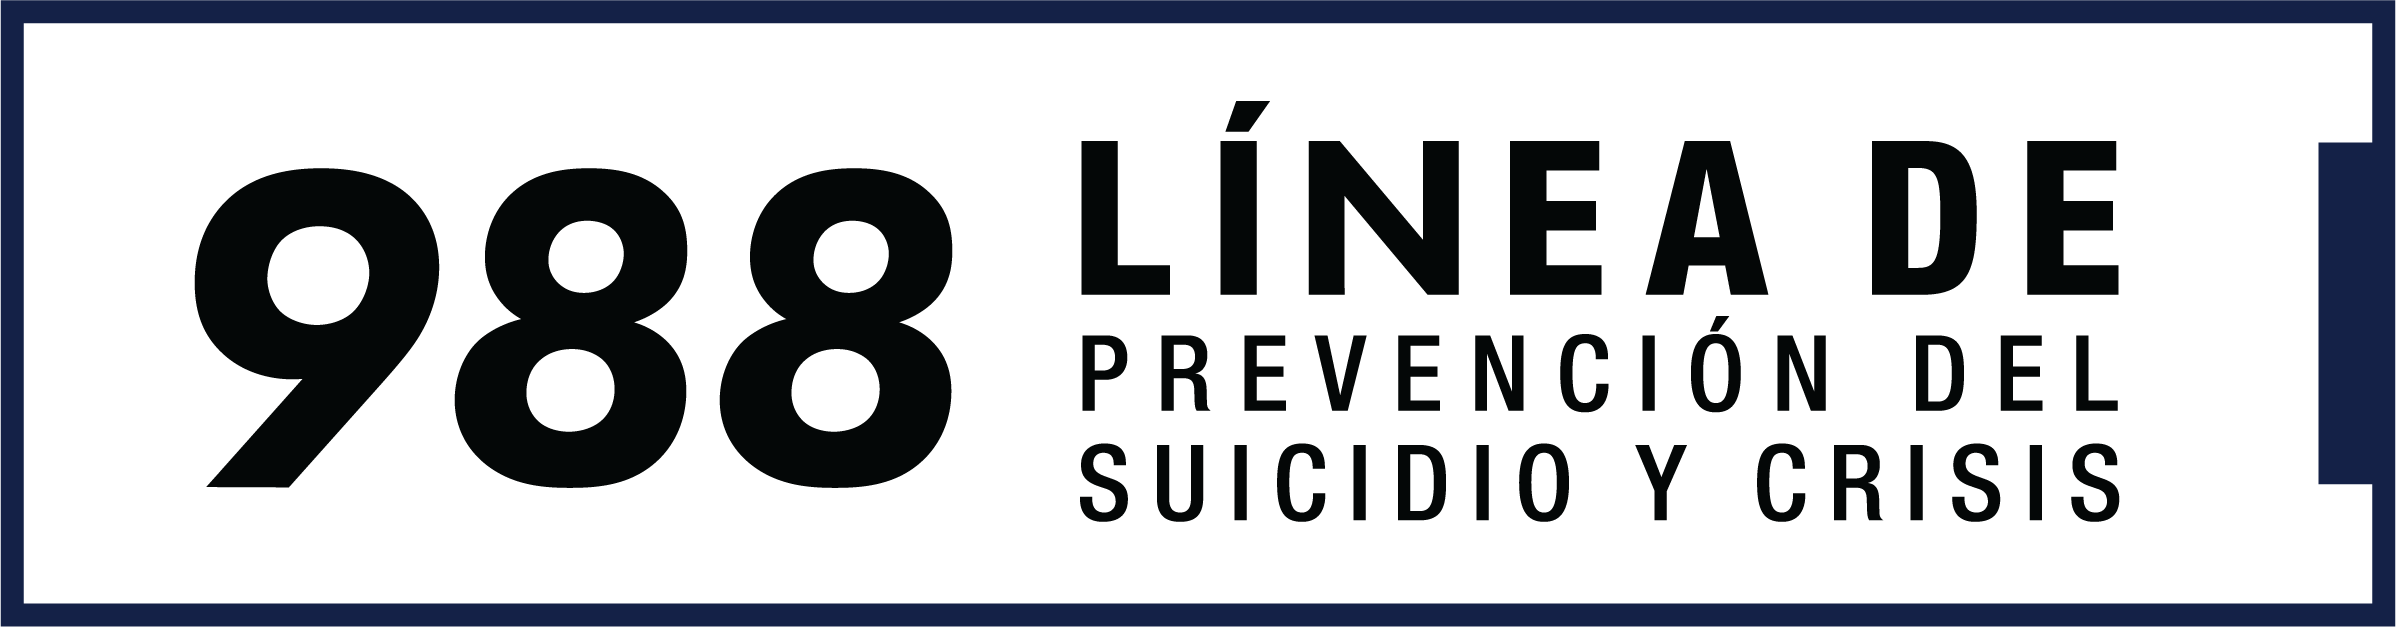 Si está pensando en suicidarse, está preocupado por un amigo o un ser querido, o desea apoyo emocional, la red Lifeline está disponible las 24 horas del día, los 7 días de la semana en todo Estados Unidos.